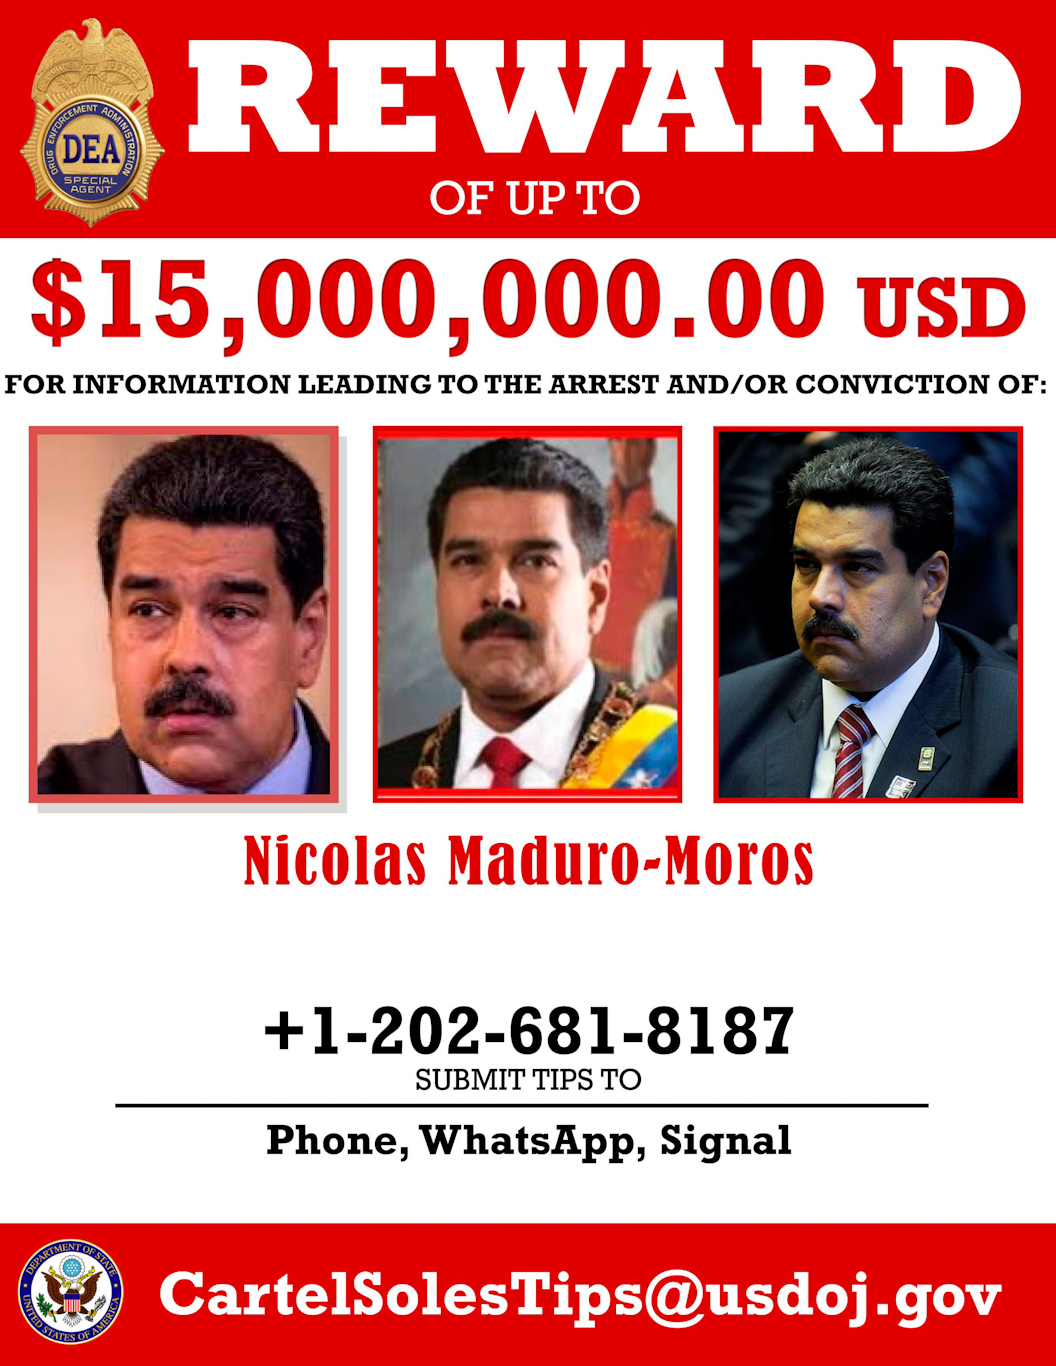 Maduro wanted poster